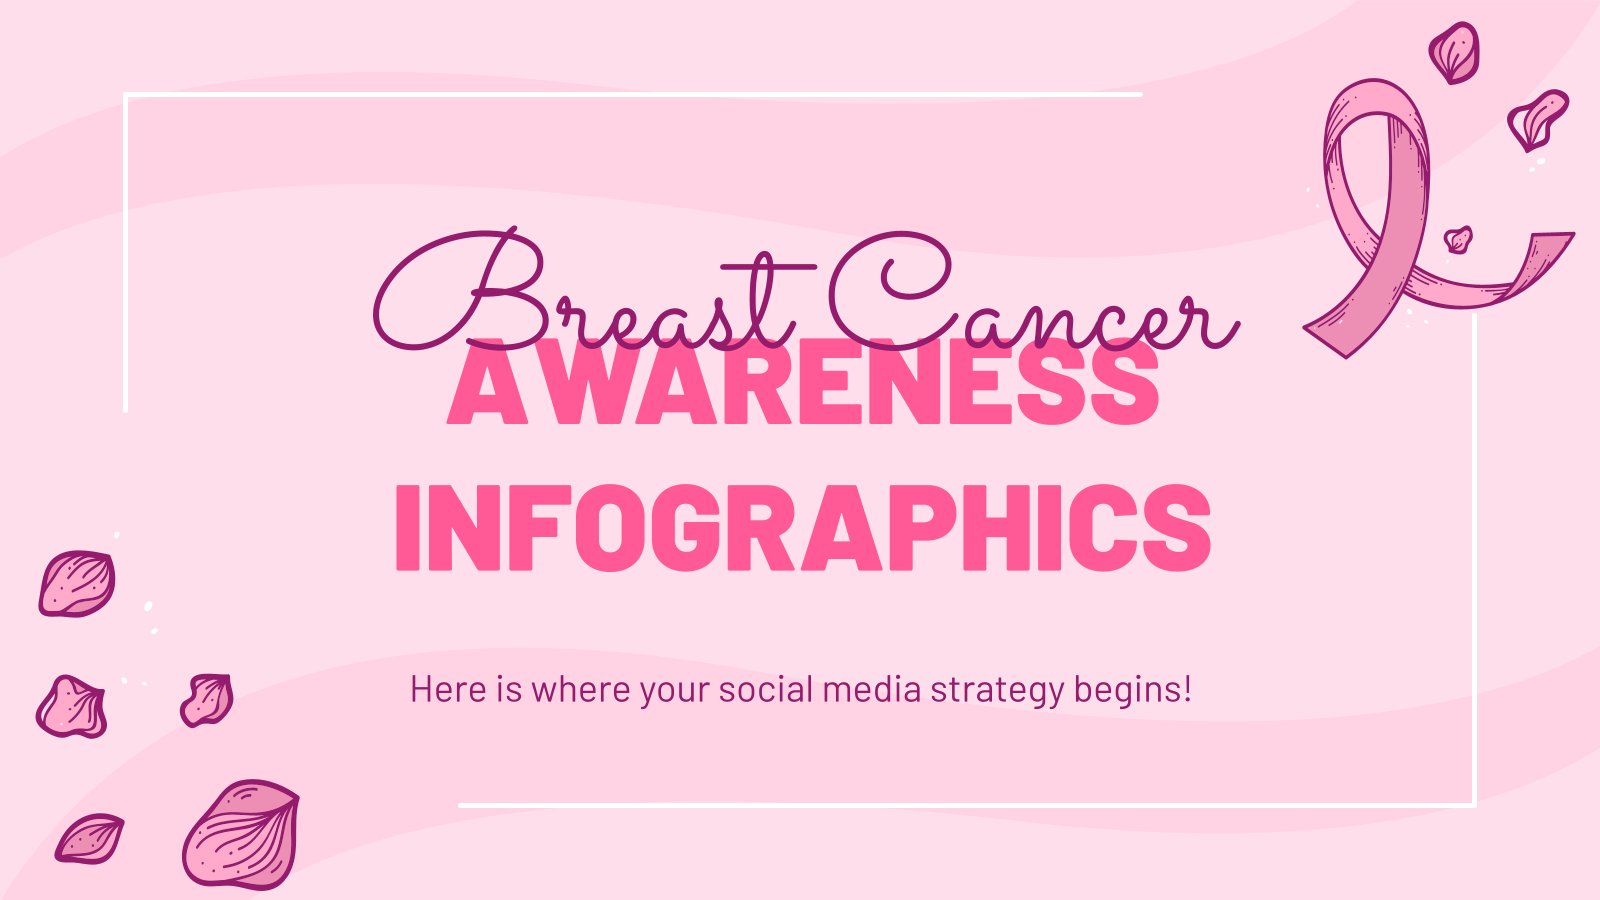 Modelo de apresentação Infográficos de conscientização sobre o câncer de mama